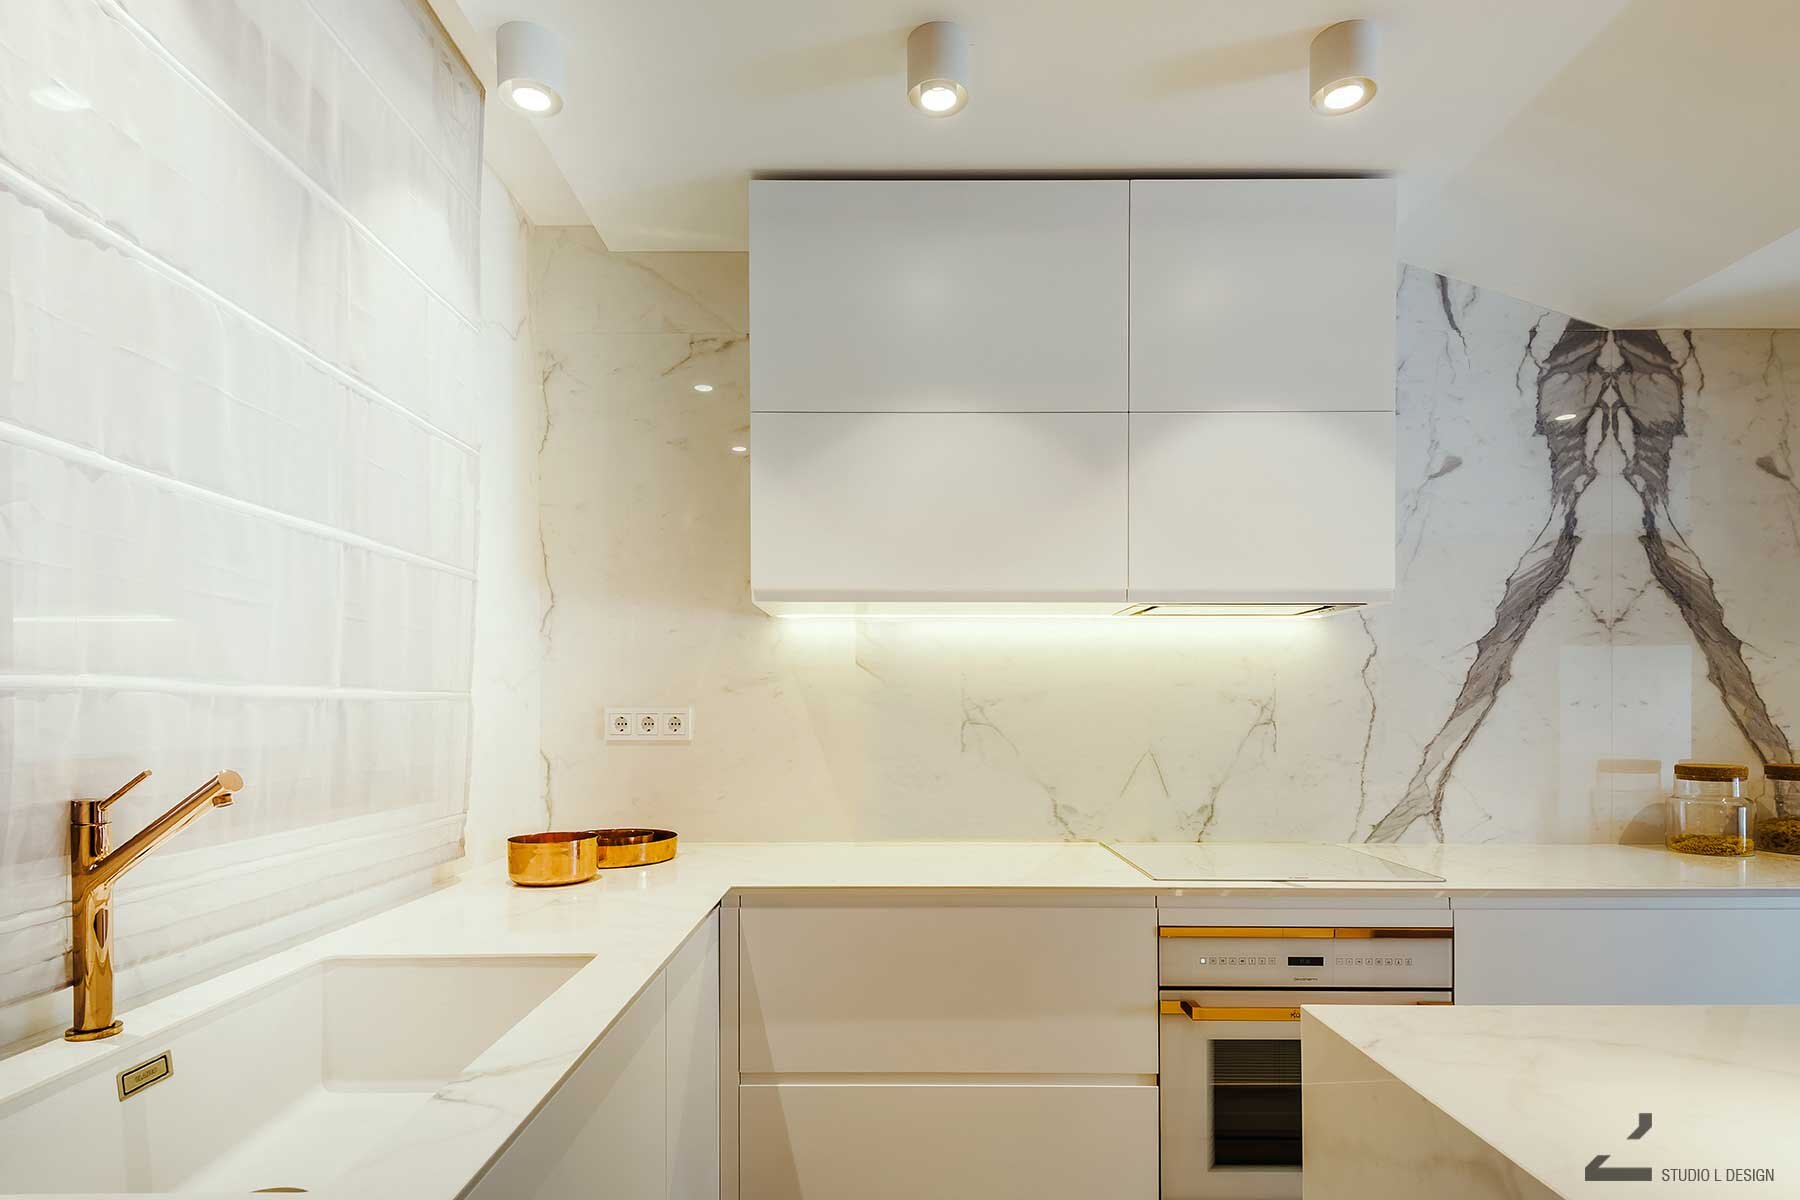 1-kitchen-interior-design-1.jpg